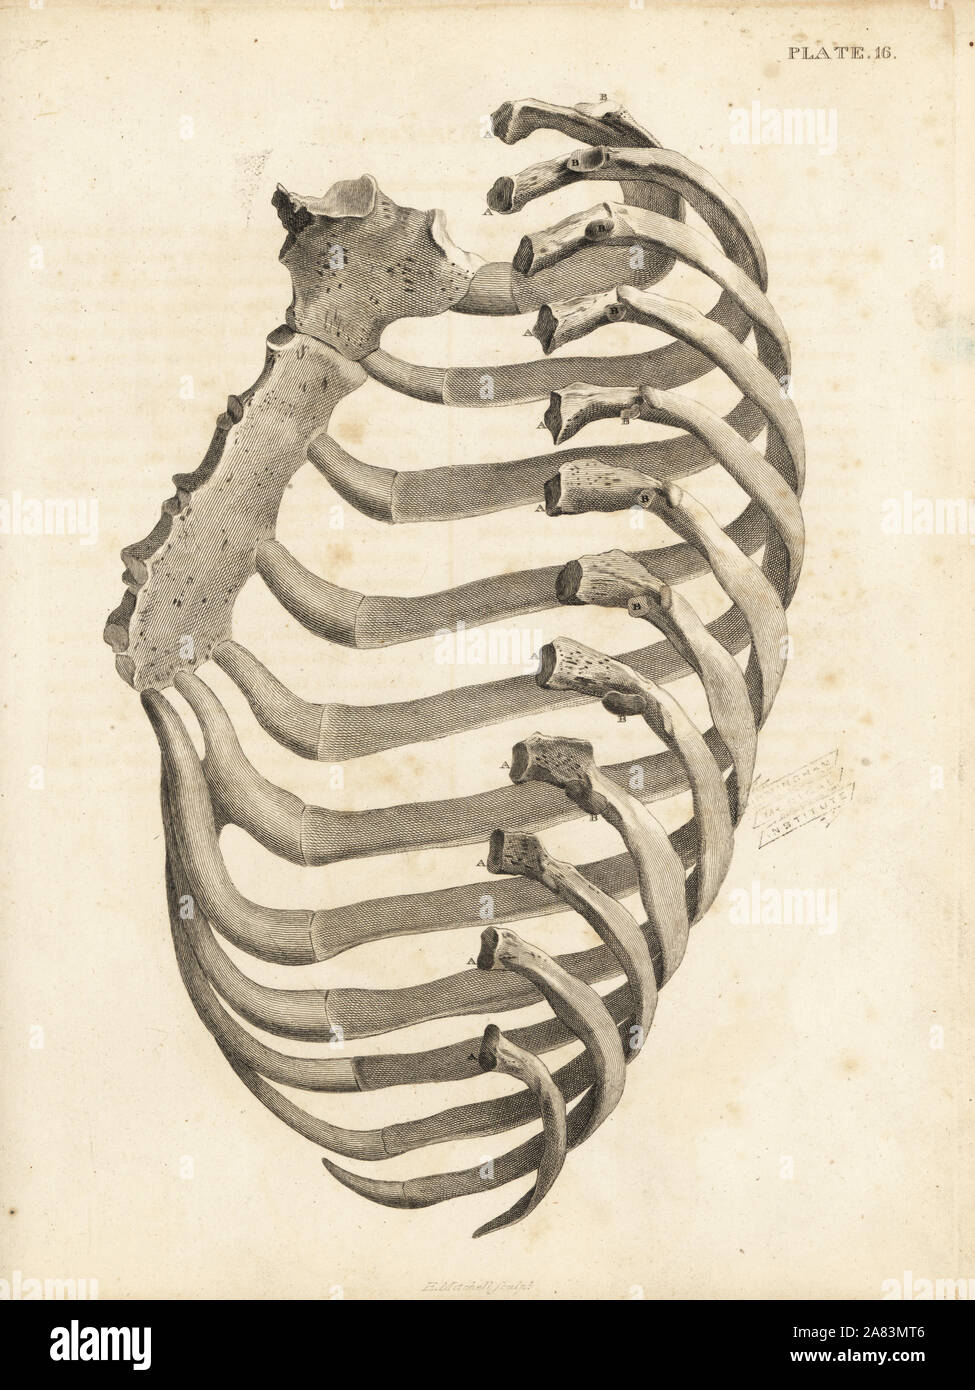 Les côtes et le sternum à la cage thoracique de l'homme. La gravure sur cuivre par Edward Mitchell après une illustration anatomique par Jean-Joseph Sue de John Barclay's une série de gravures du squelette humain, MacLachlan et Stewart, Édimbourg, 1824. Banque D'Images